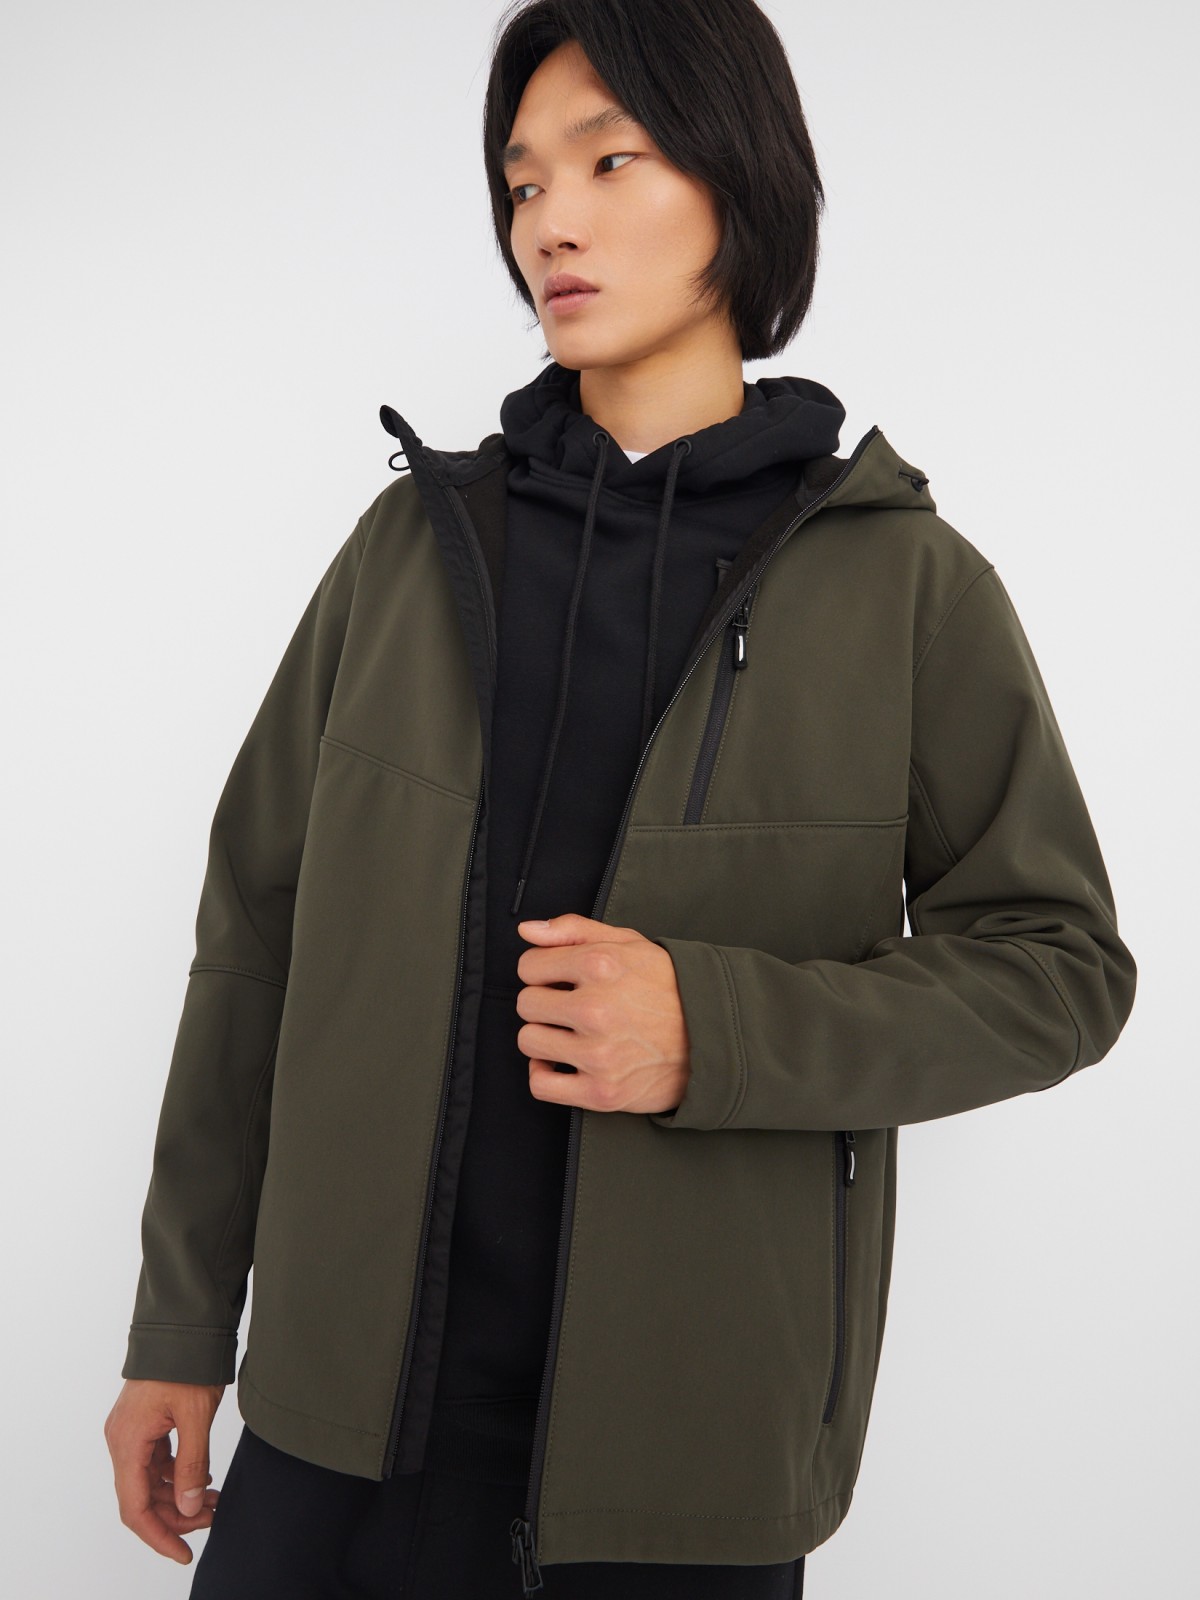 Лёгкая куртка-ветровка без утеплителя с капюшоном zolla 013325602014, цвет хаки, размер XXL - фото 1